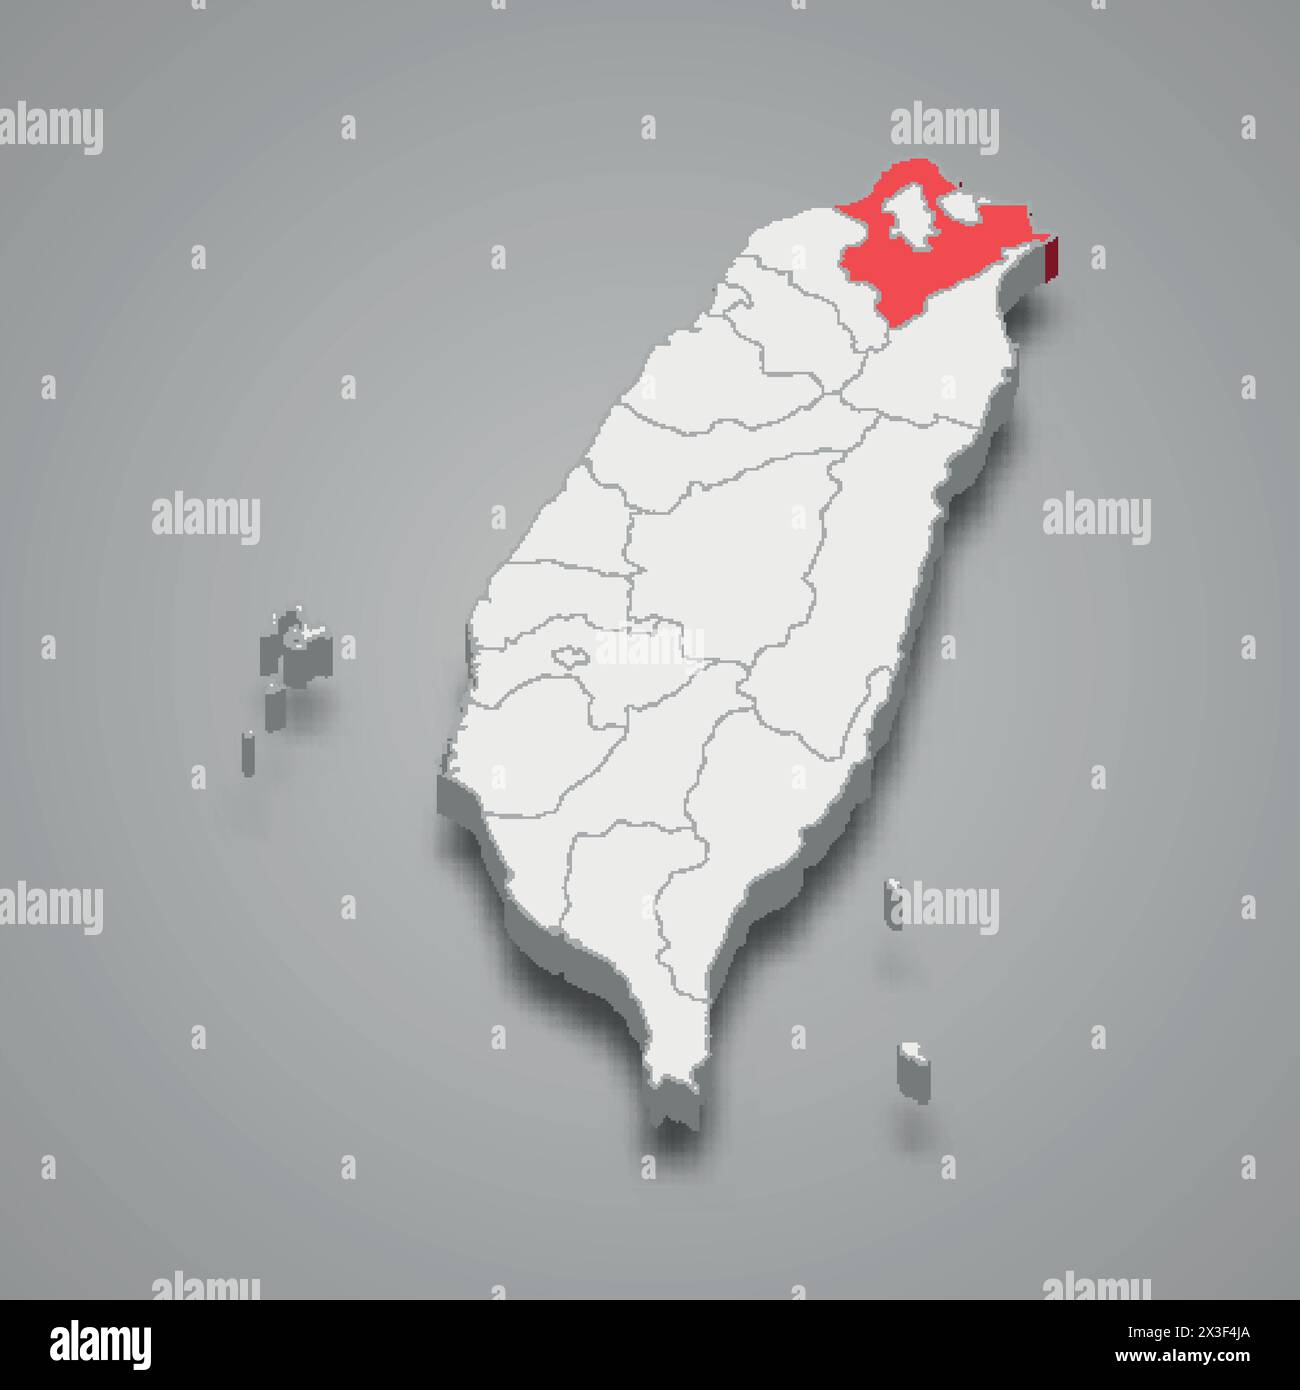 New Taipei City Division ist rot auf einer grauen Taiwan 3D Karte hervorgehoben Stock Vektor